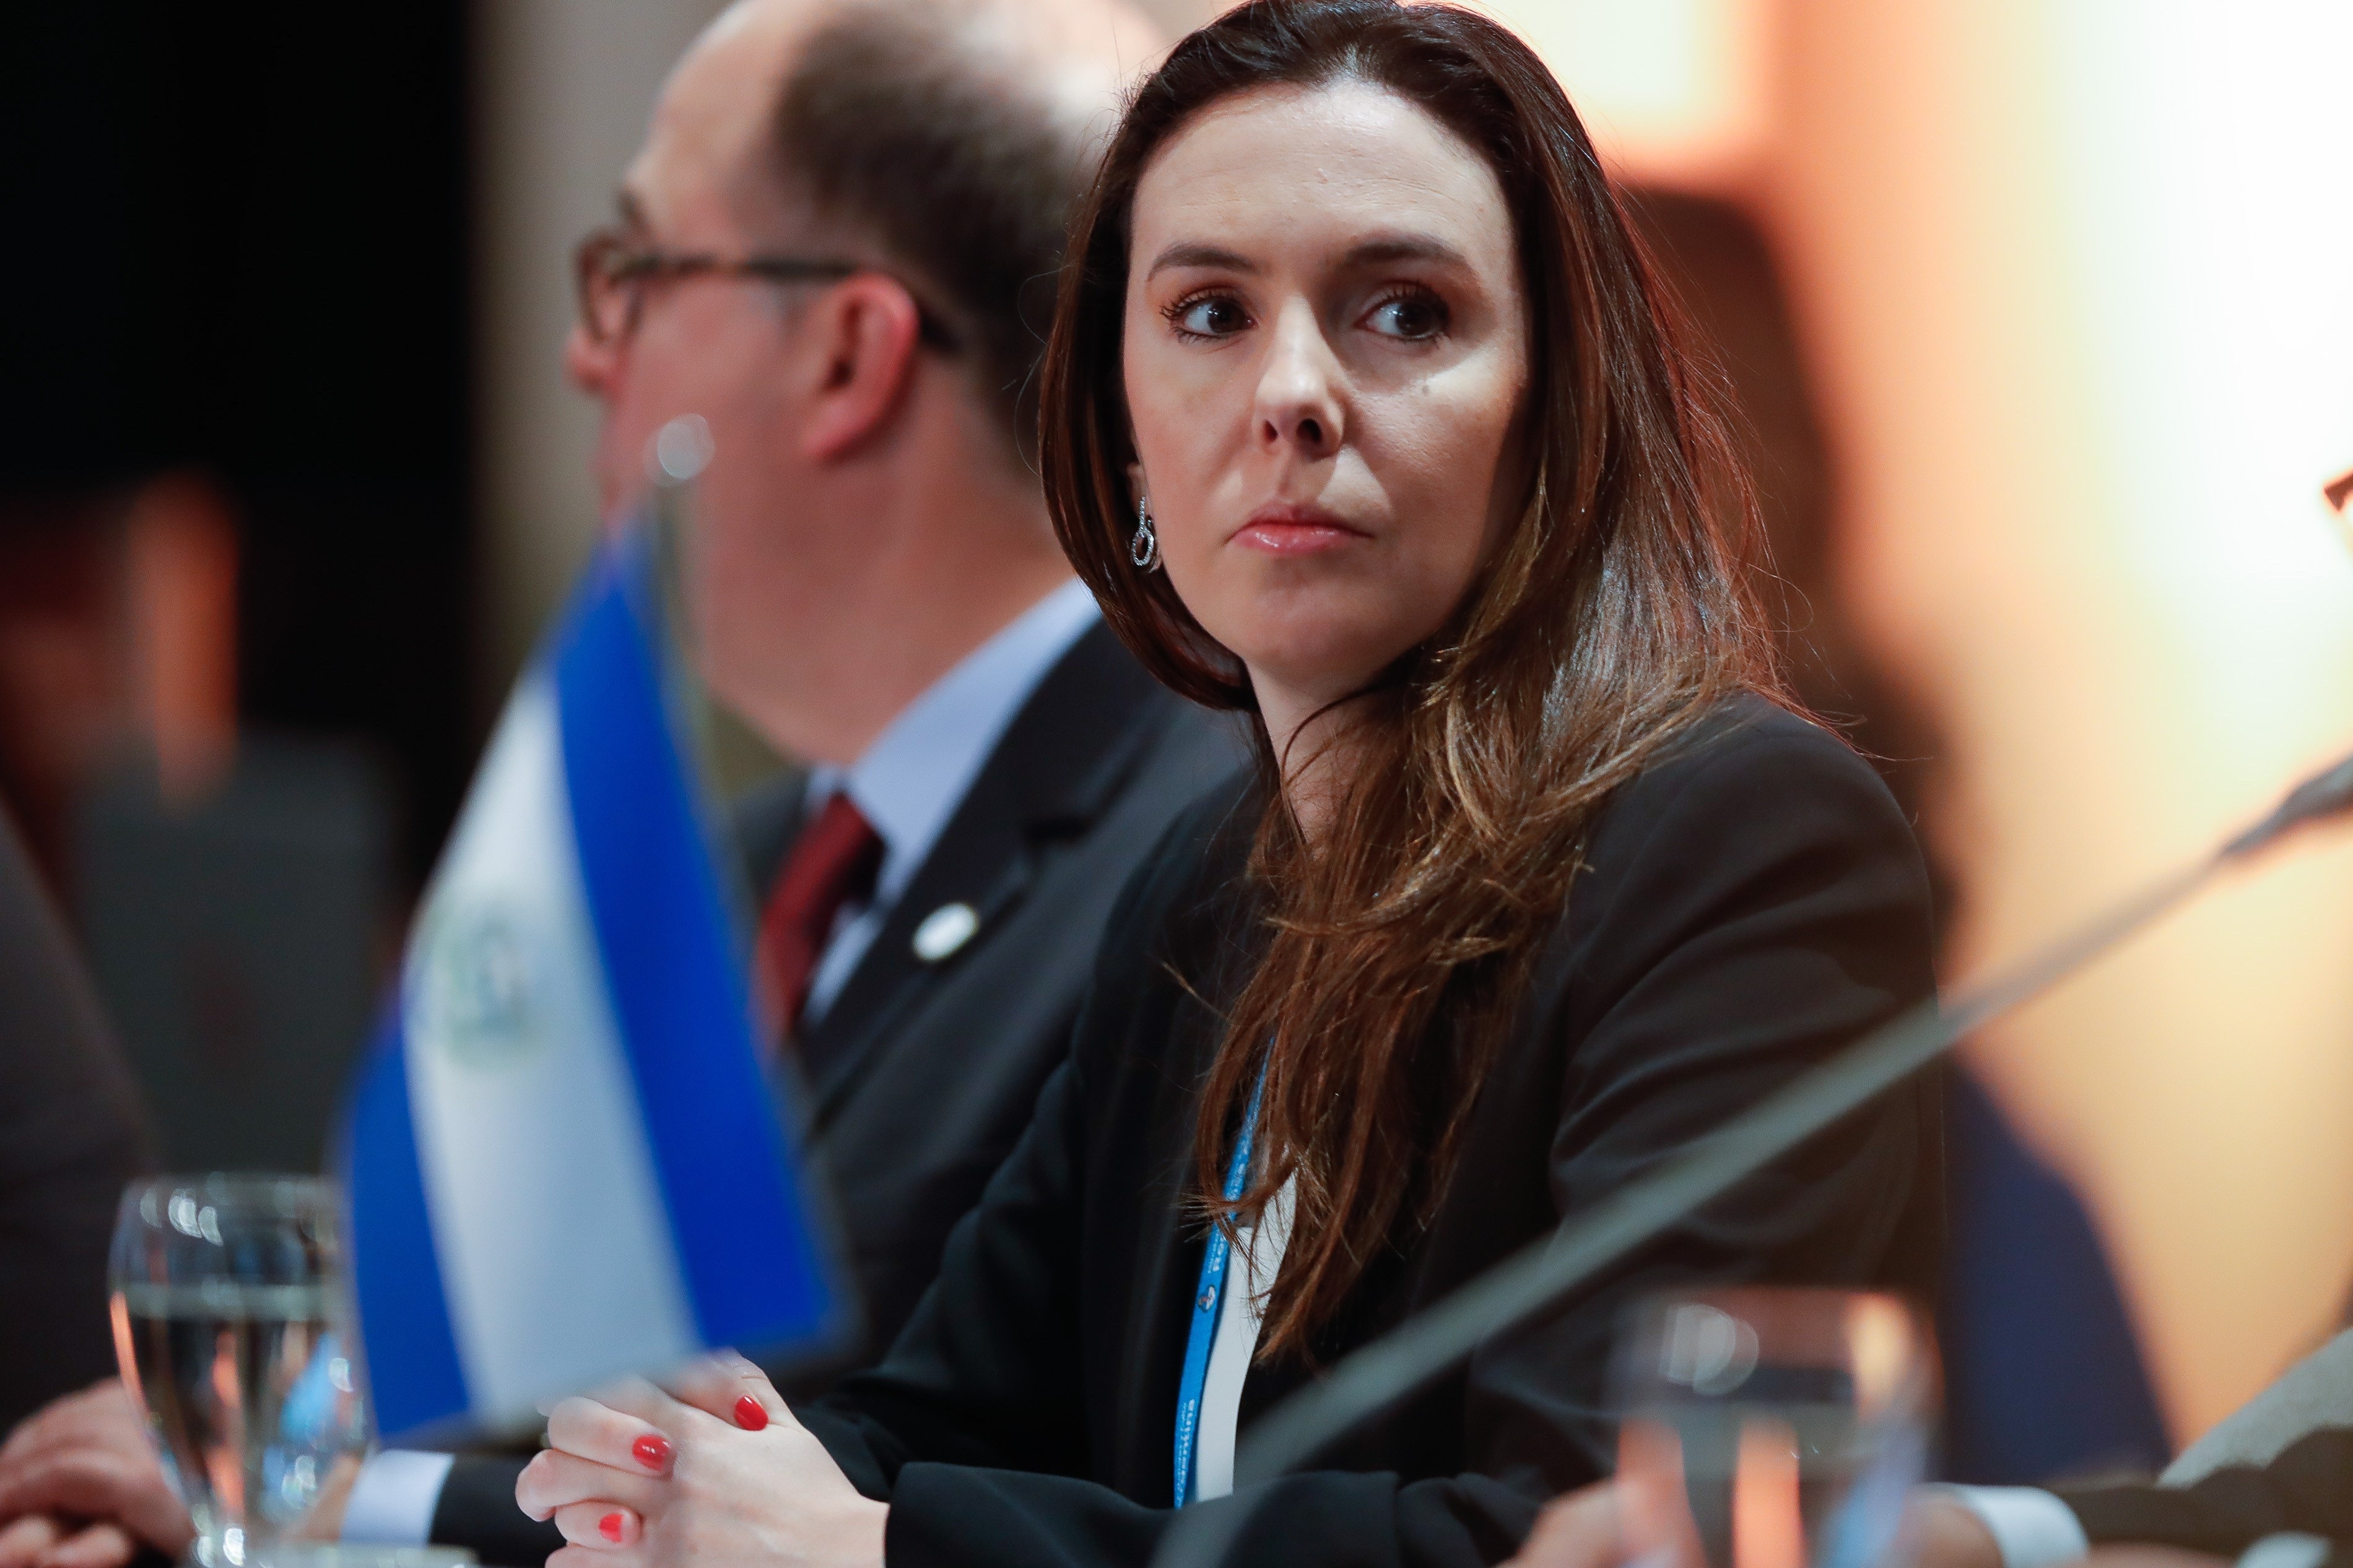 The representative of the interim government of Venezuela in Argentina, Elisa Trotta Gamus